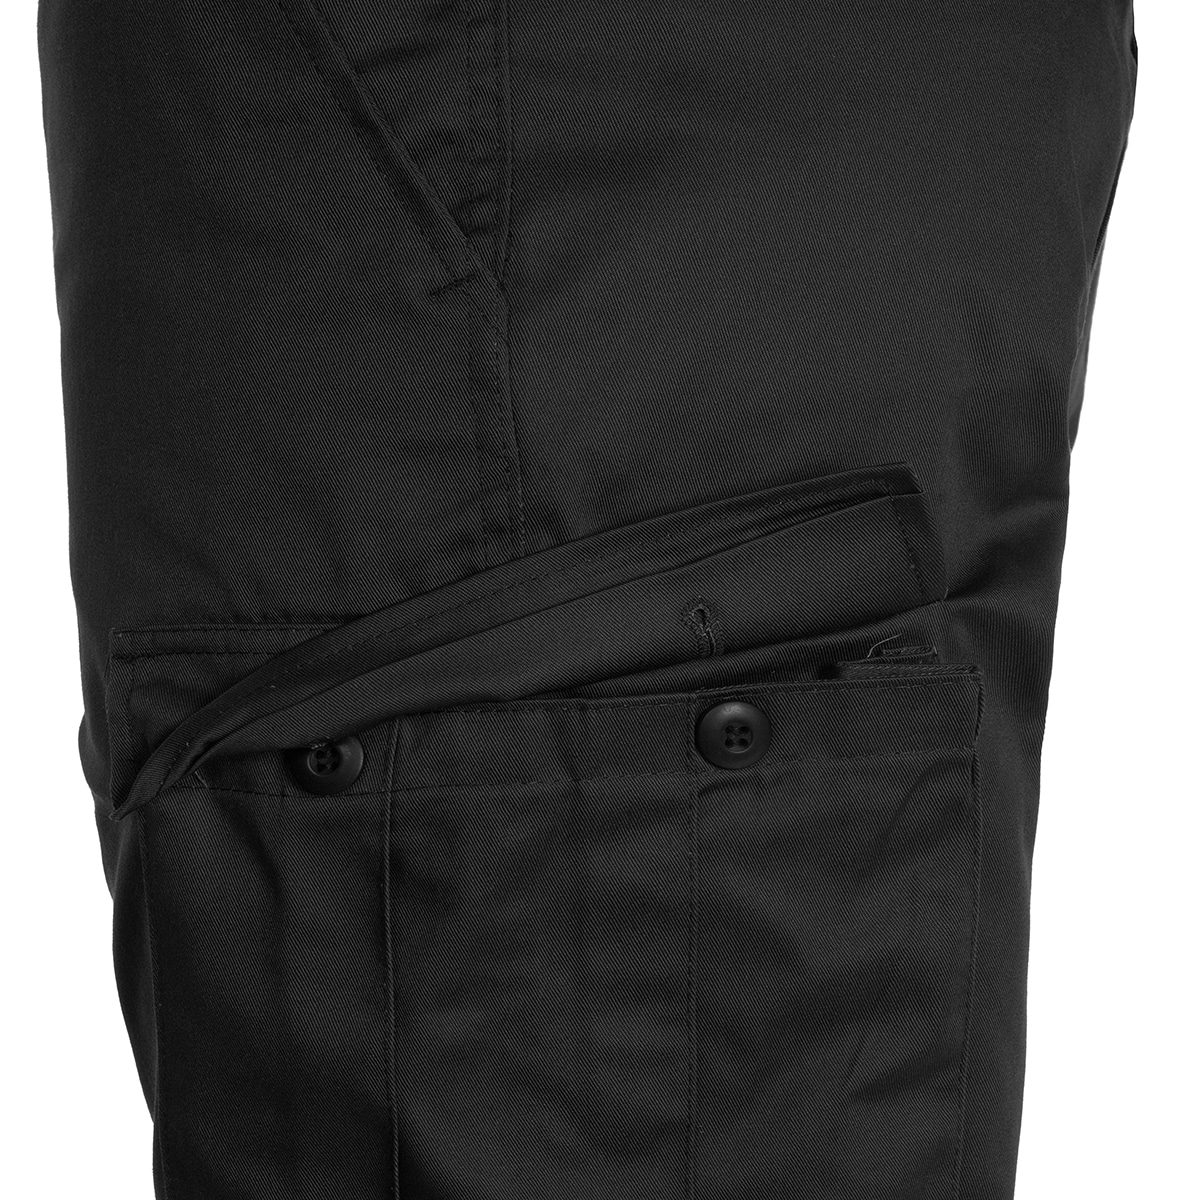 Spodnie wojskowe Mil-Tec wzmacniane BDU Black